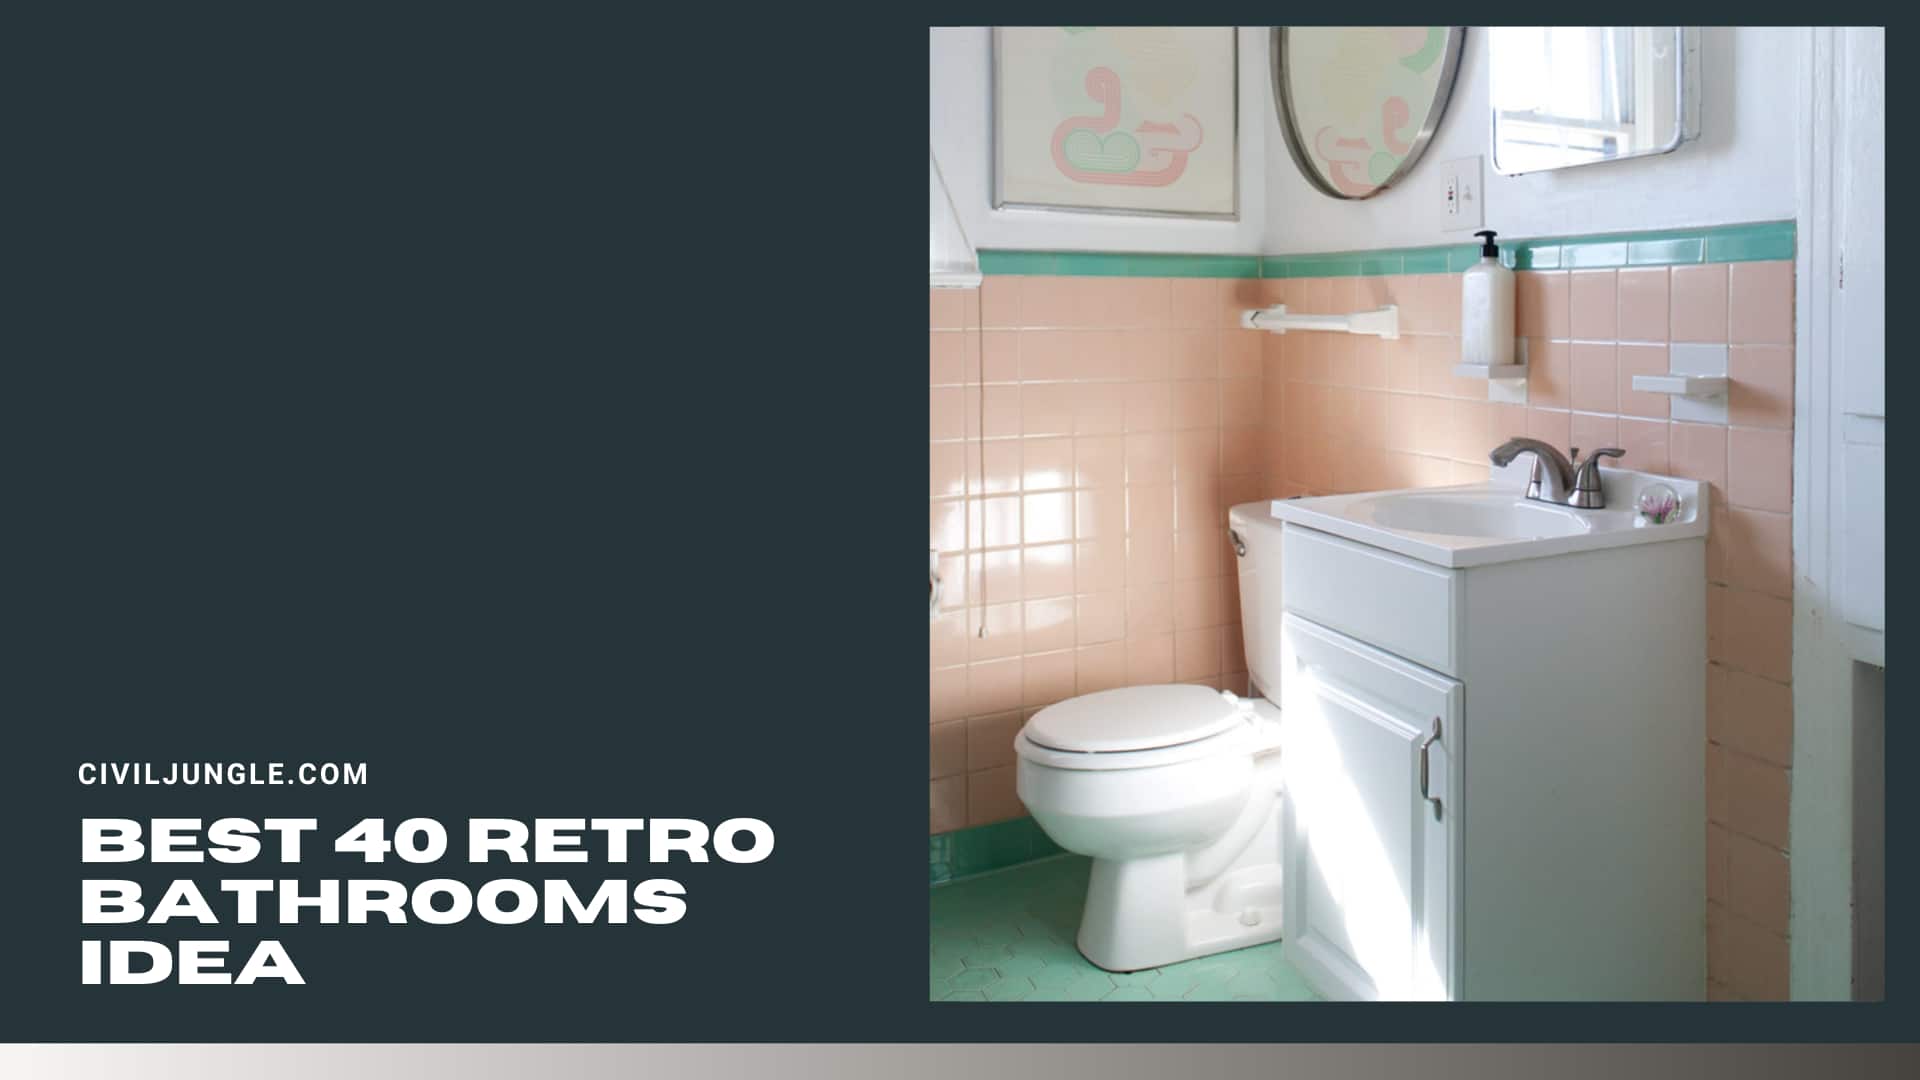 Best 40 Retro Bathrooms Idea